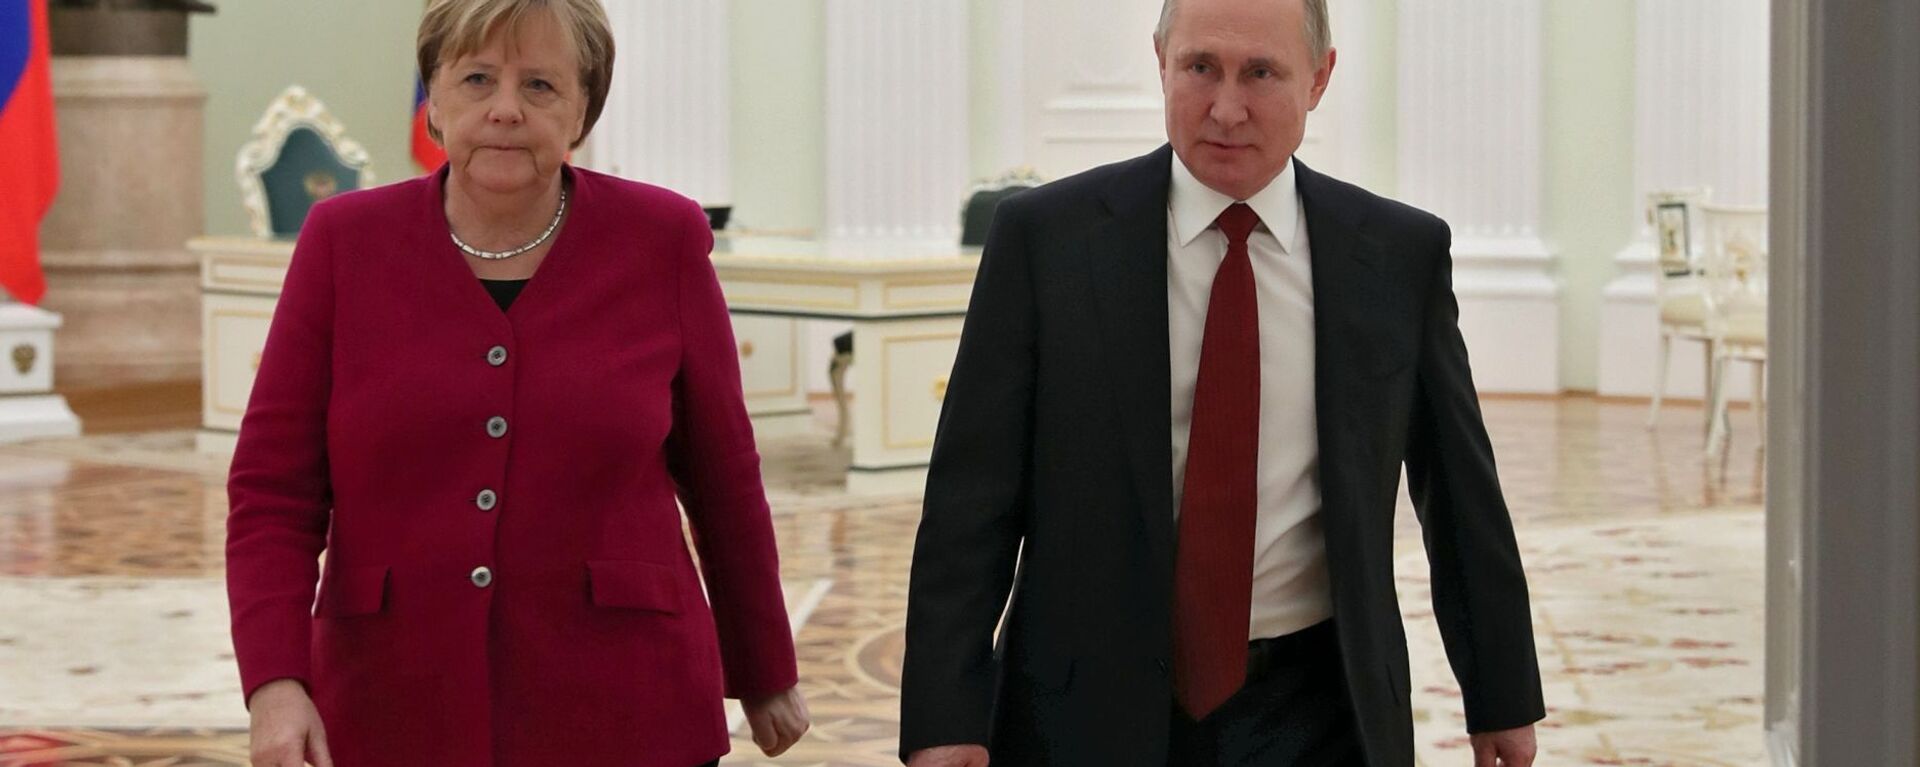 Руски председник Владимир Путин и немачка канцеларка Ангела Меркел - Sputnik Србија, 1920, 13.08.2021